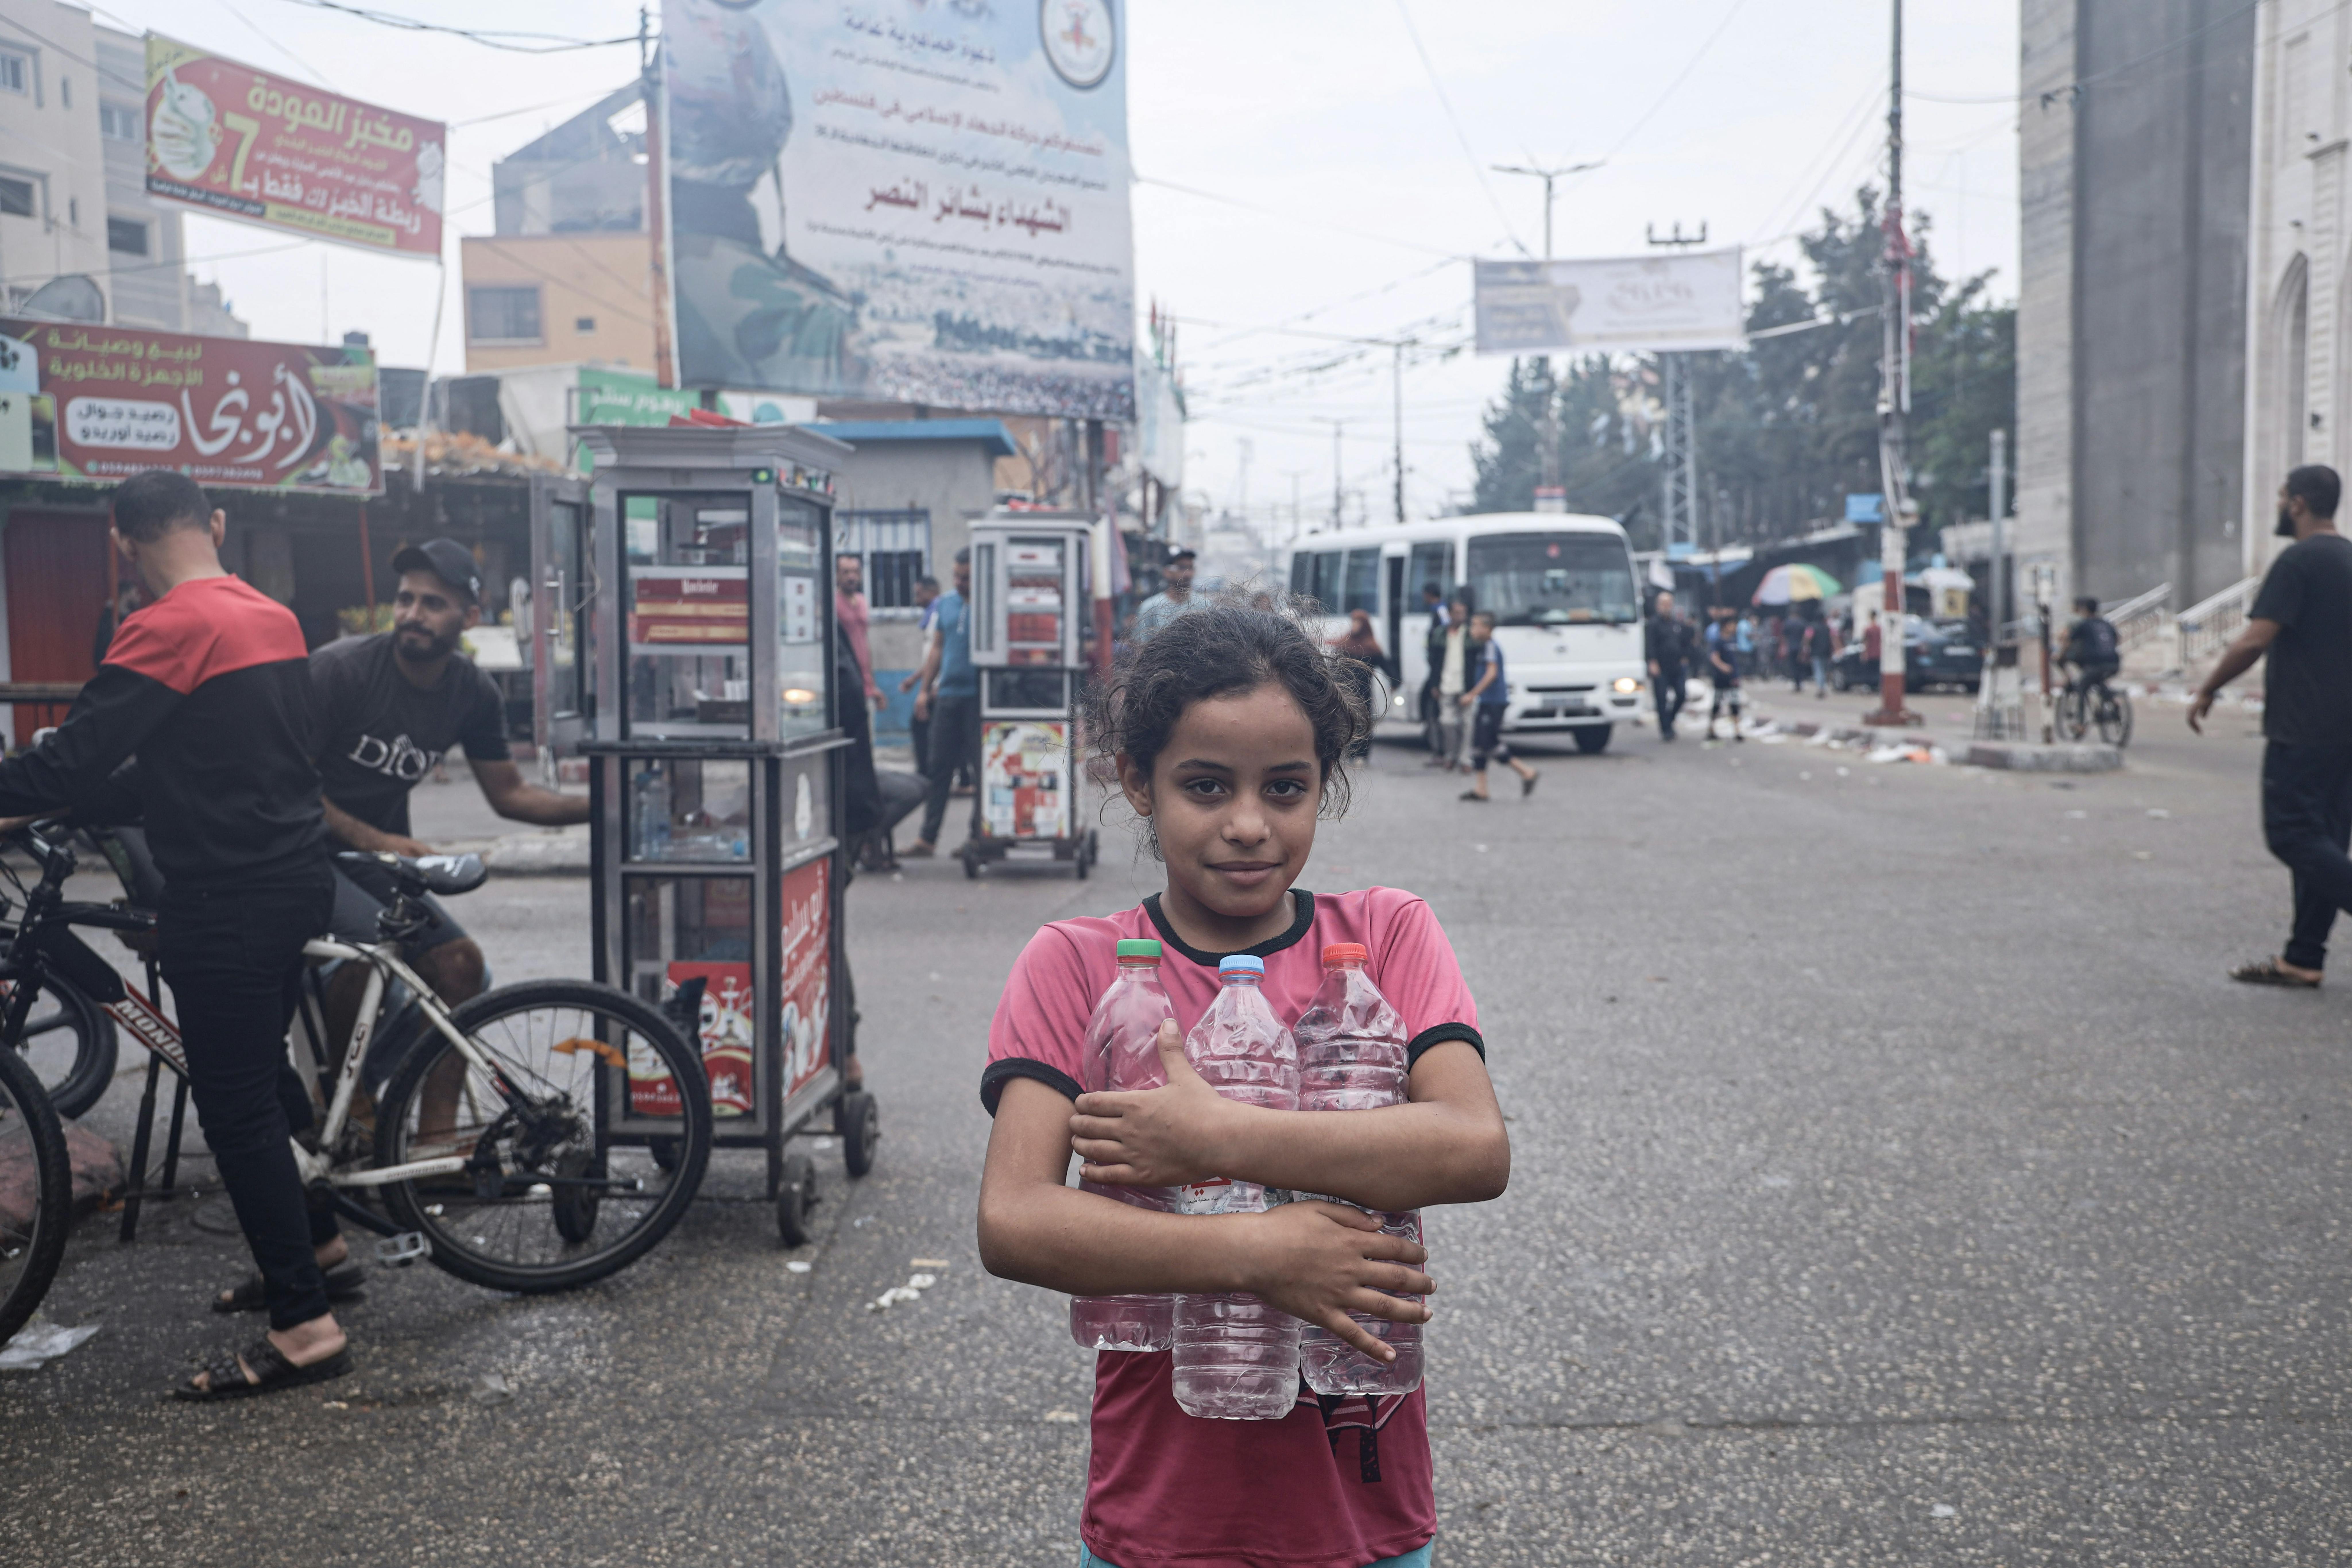 Salwa Elyan, 8 anni abbraccia delle bottiglie vuote per poterle riempire e poi portare dalla sua famiglia.“Da grande vorrei fare l’infermiera. Spero che la guerra finisca subito. Amo tutti i bambini, non voglio che muoiano come noi”.